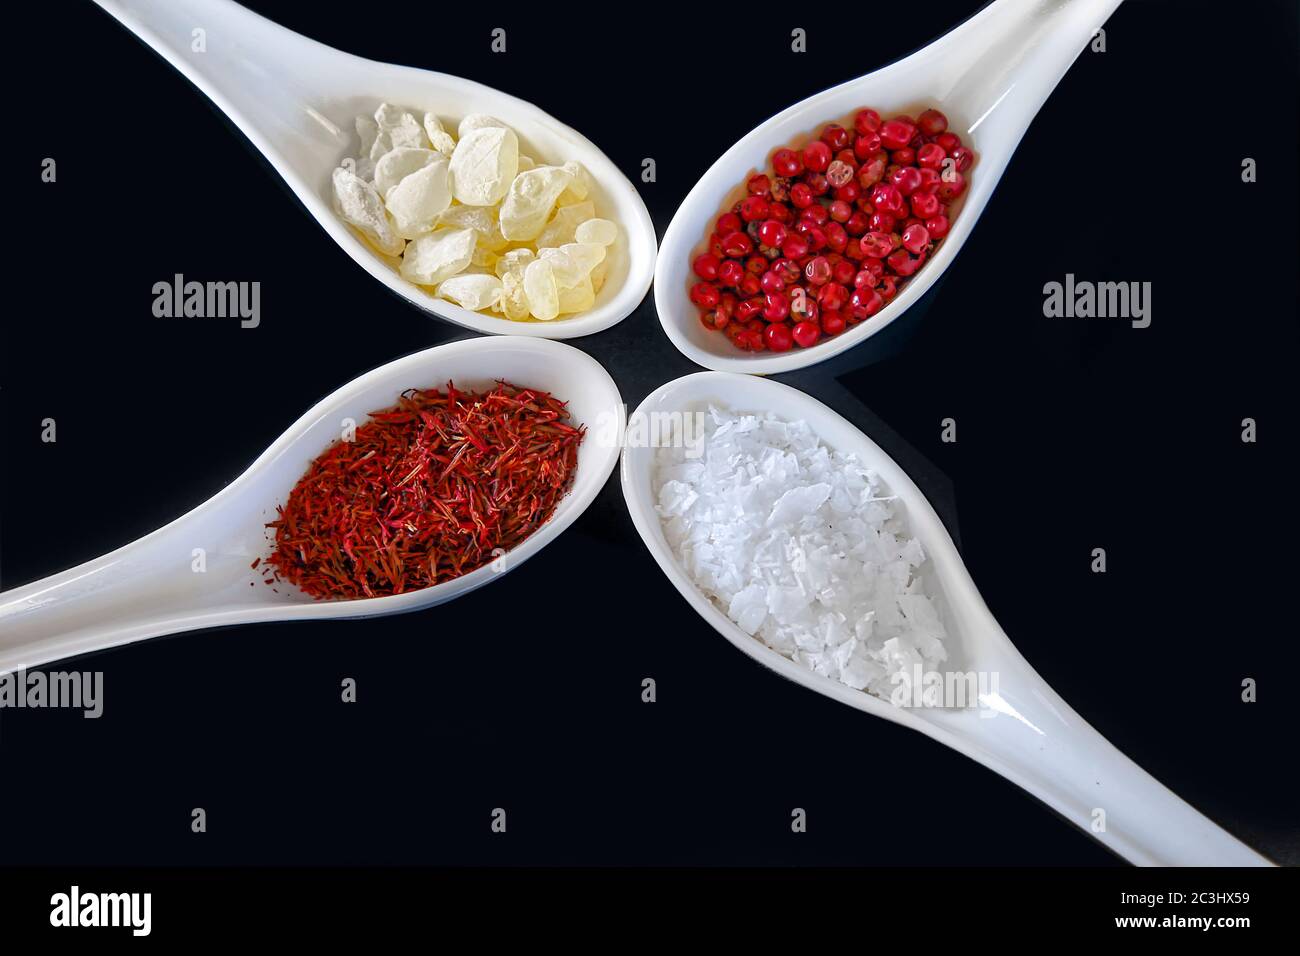 Spezie, isolate. Un assortimento di zafferano, mastika, pepe rosa e spezie in fiocchi di sale in cucchiai bianchi. Immagine stock. Foto Stock